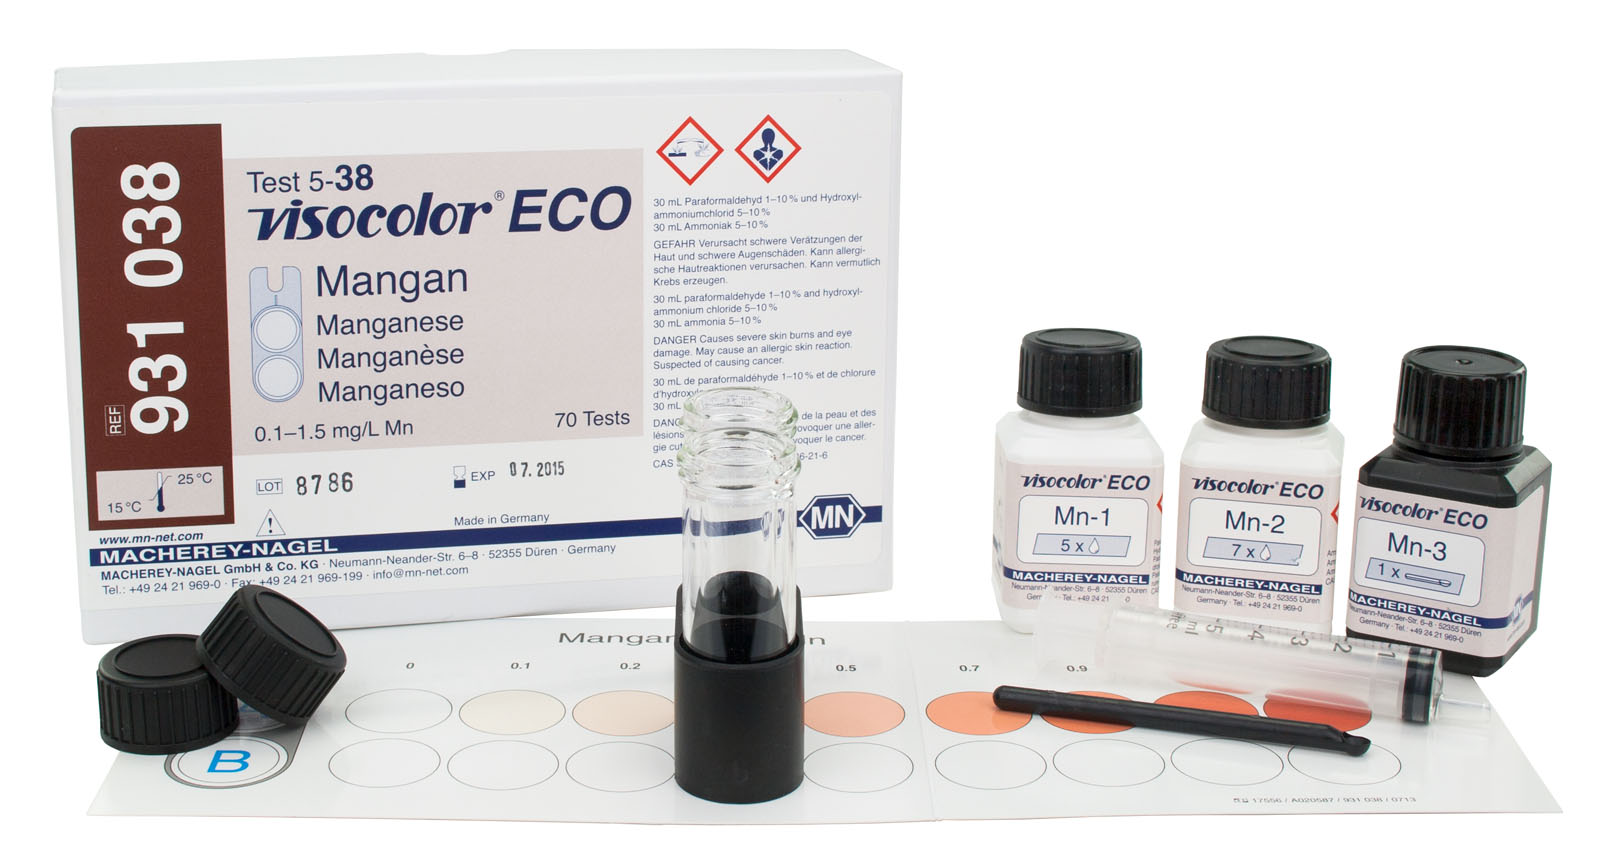 VISOCOLOR® ECO Manganese Test Kit